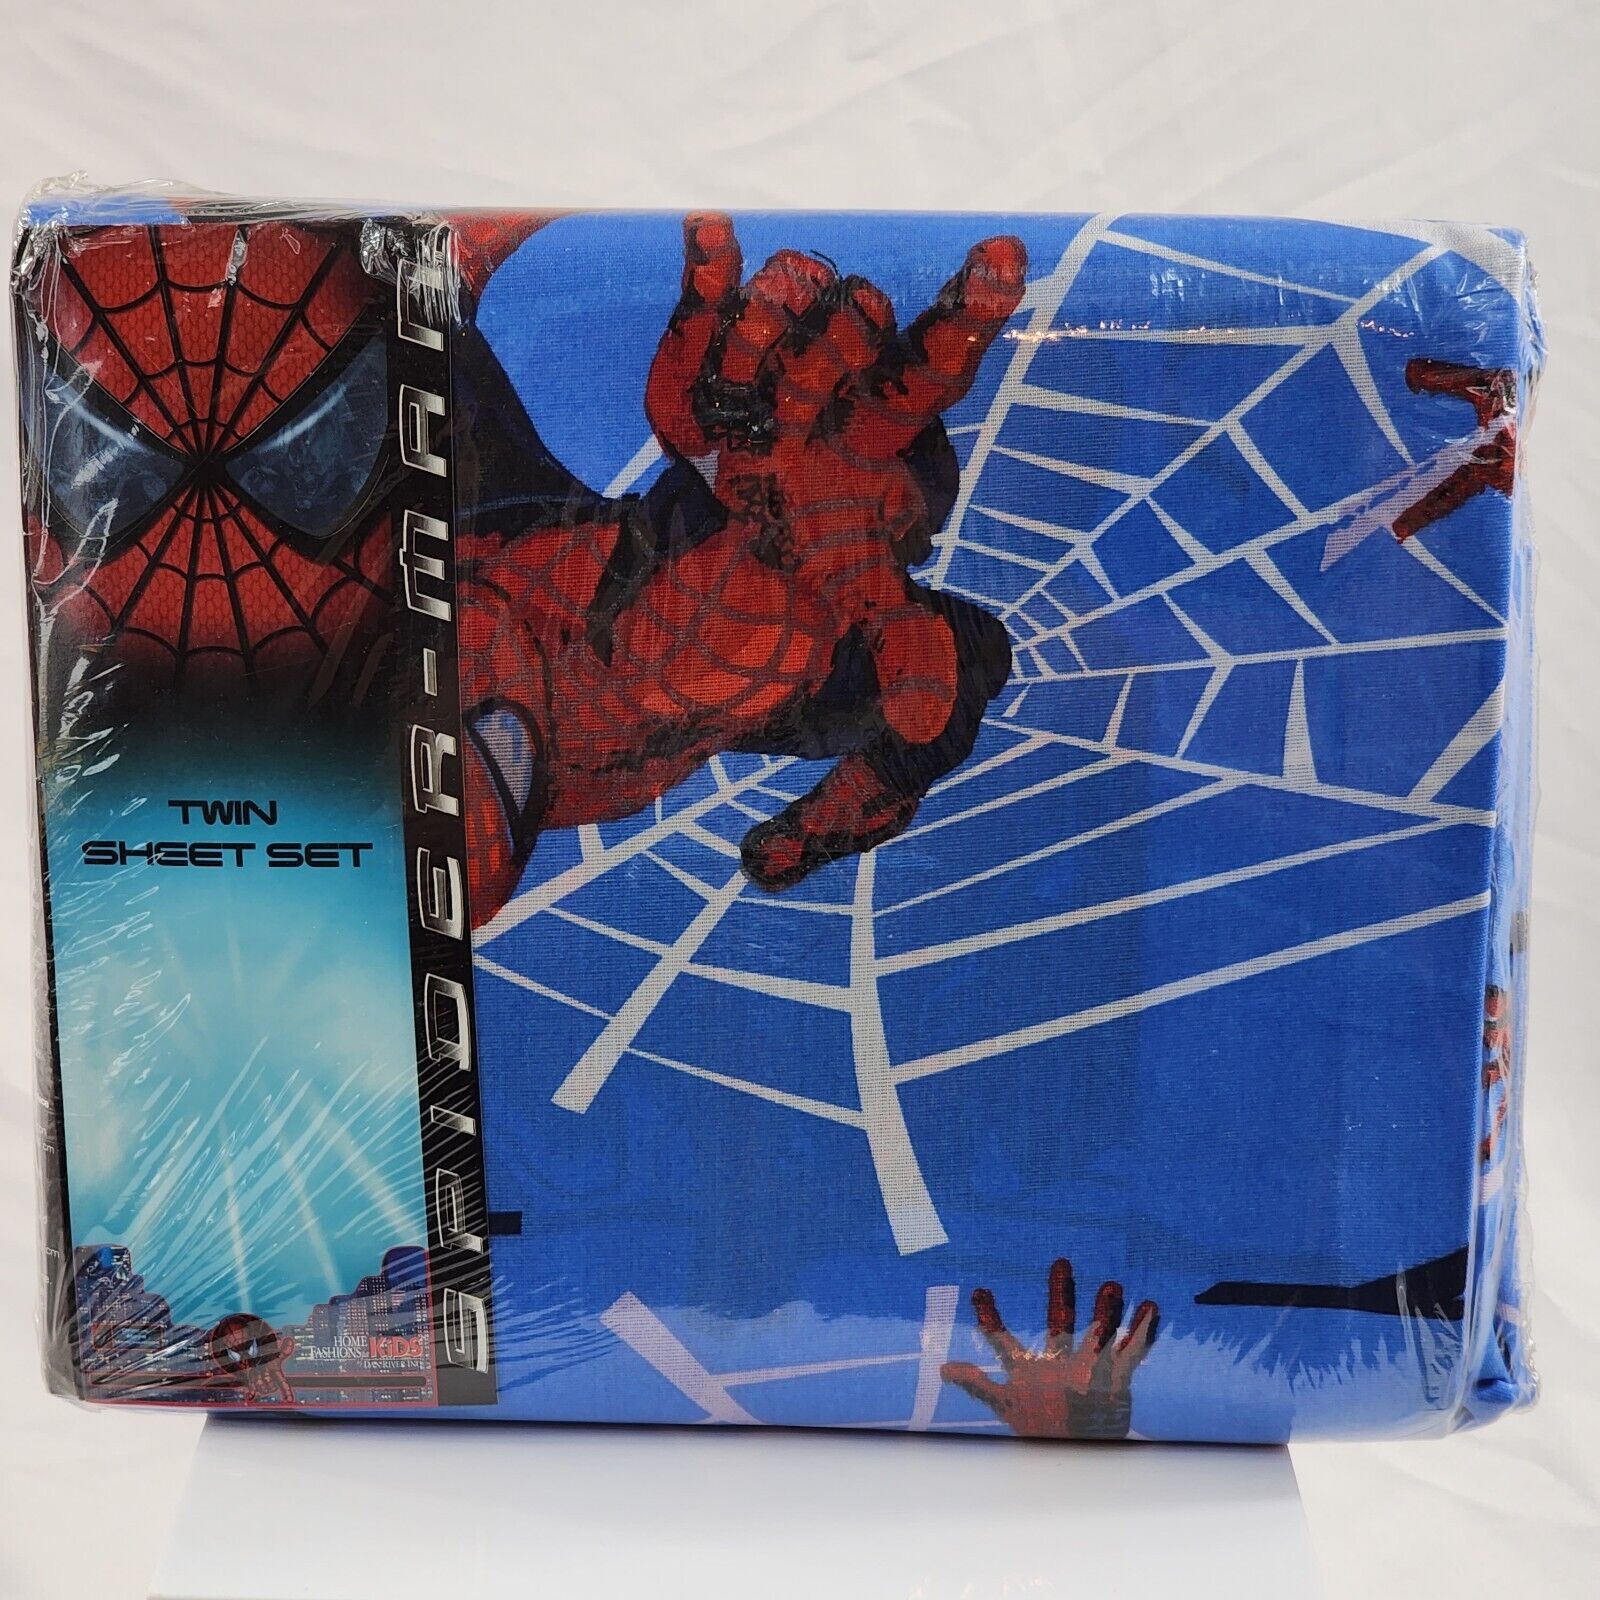 Vintage Amazing Spider-Man Movie 2002 3 Piece Twin Sheet Set MISP New NOS